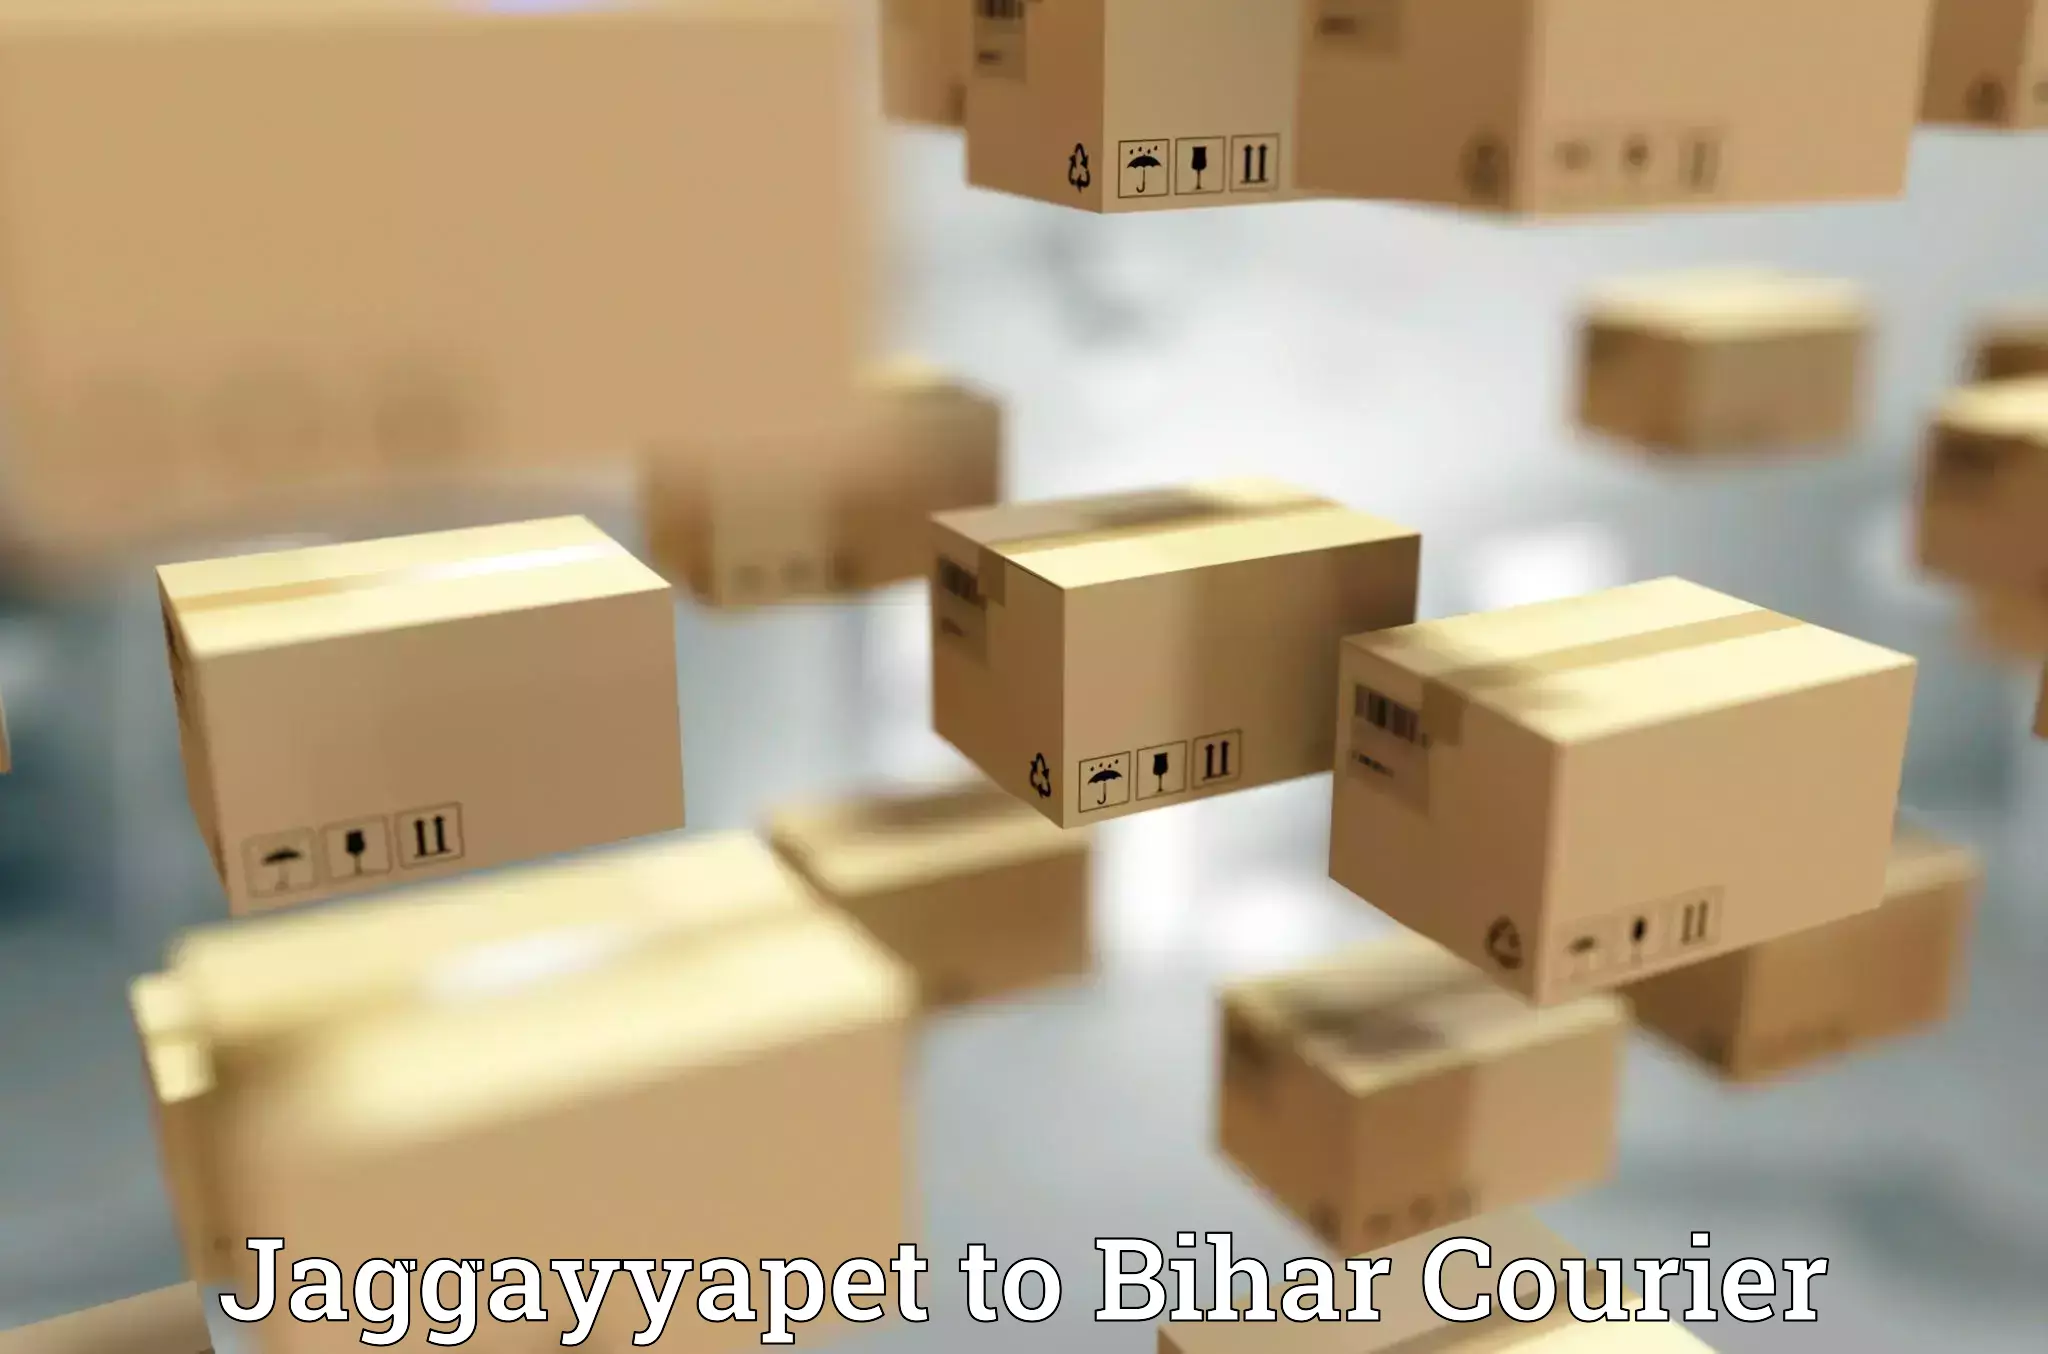 24/7 courier service Jaggayyapet to Lakhisarai